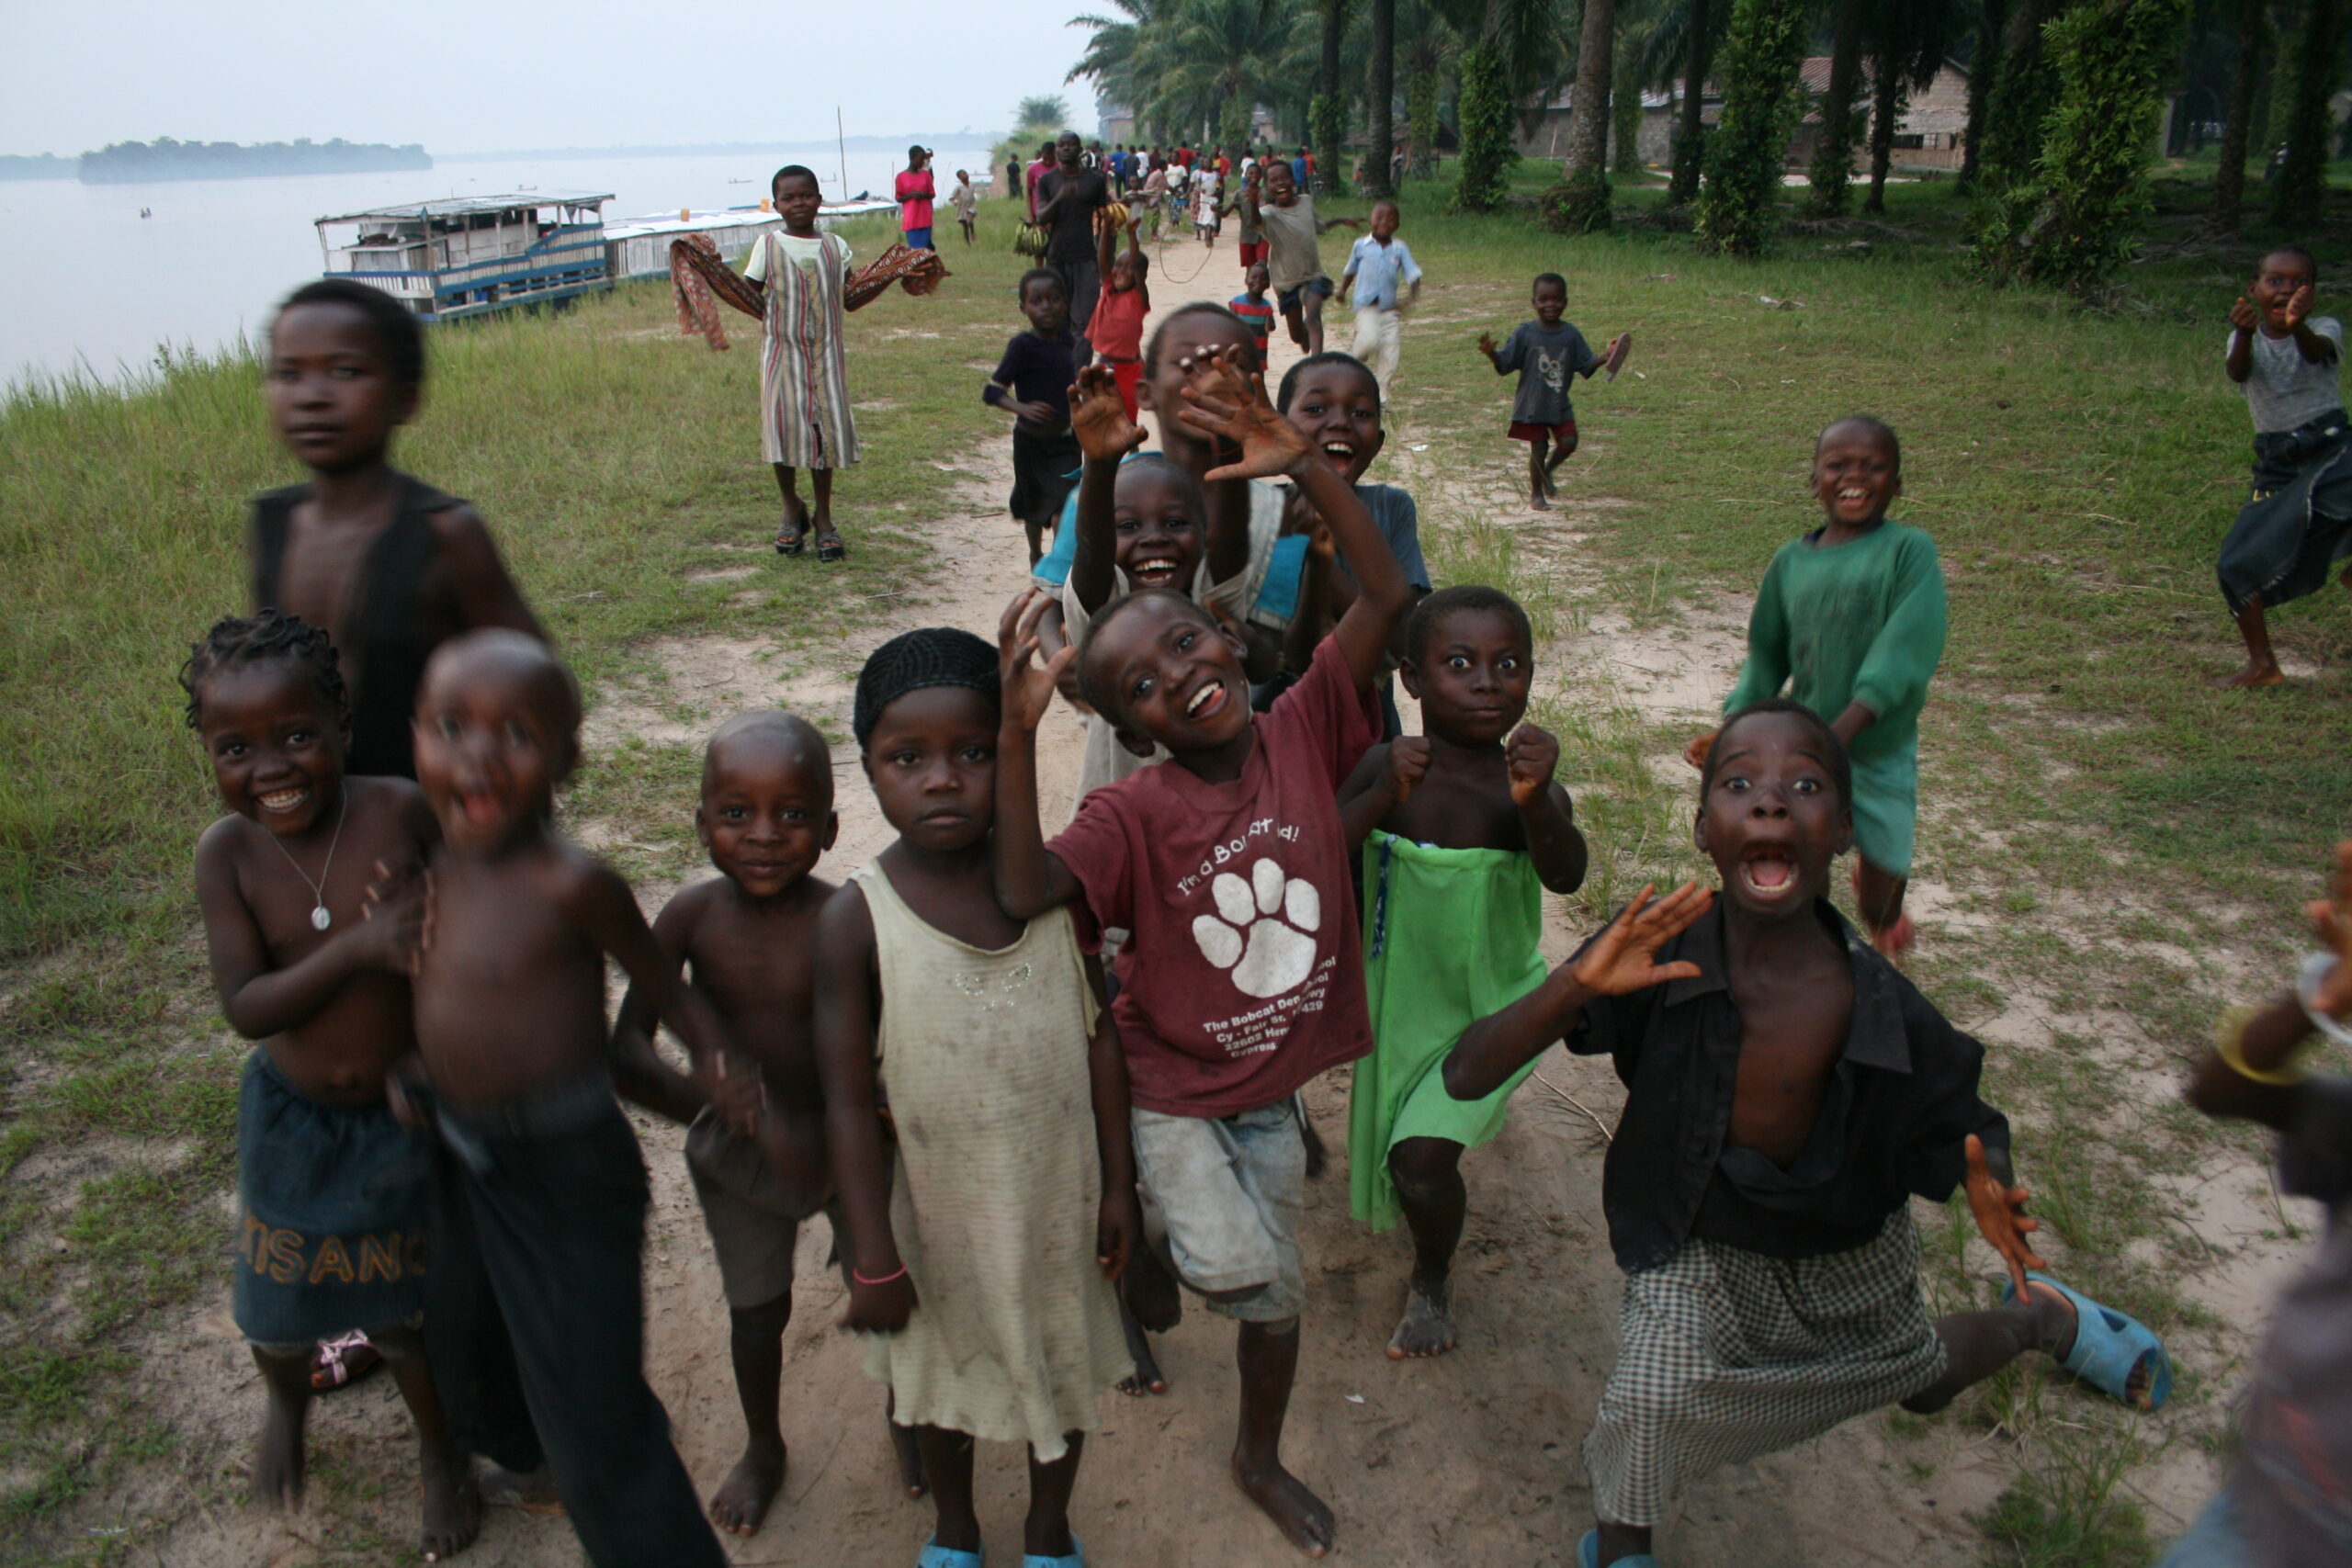 Isangi village children